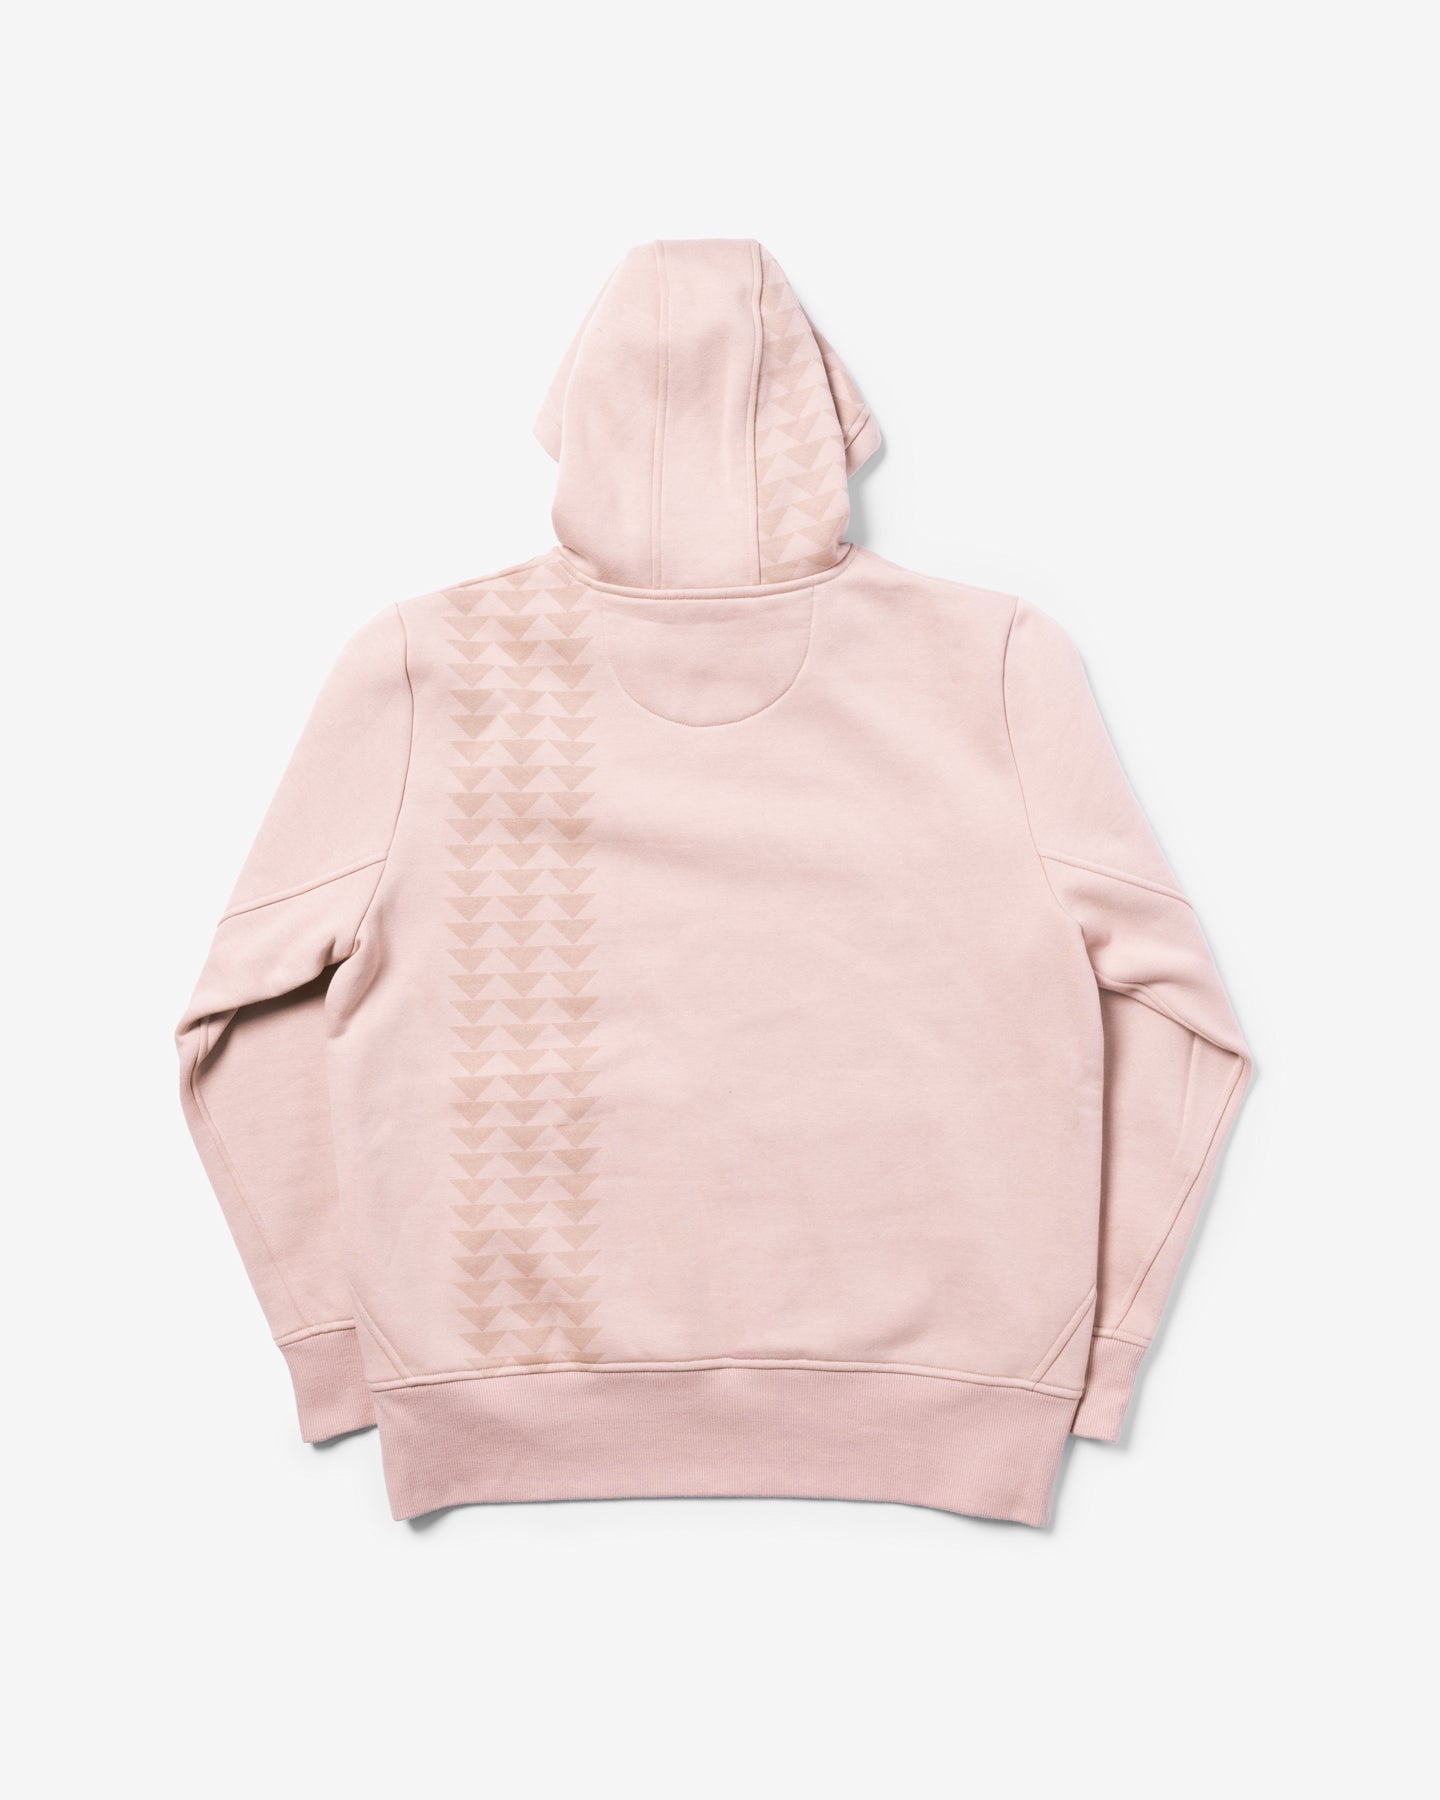 Topo Designs Canada, Womens/Apparel/Sweaters